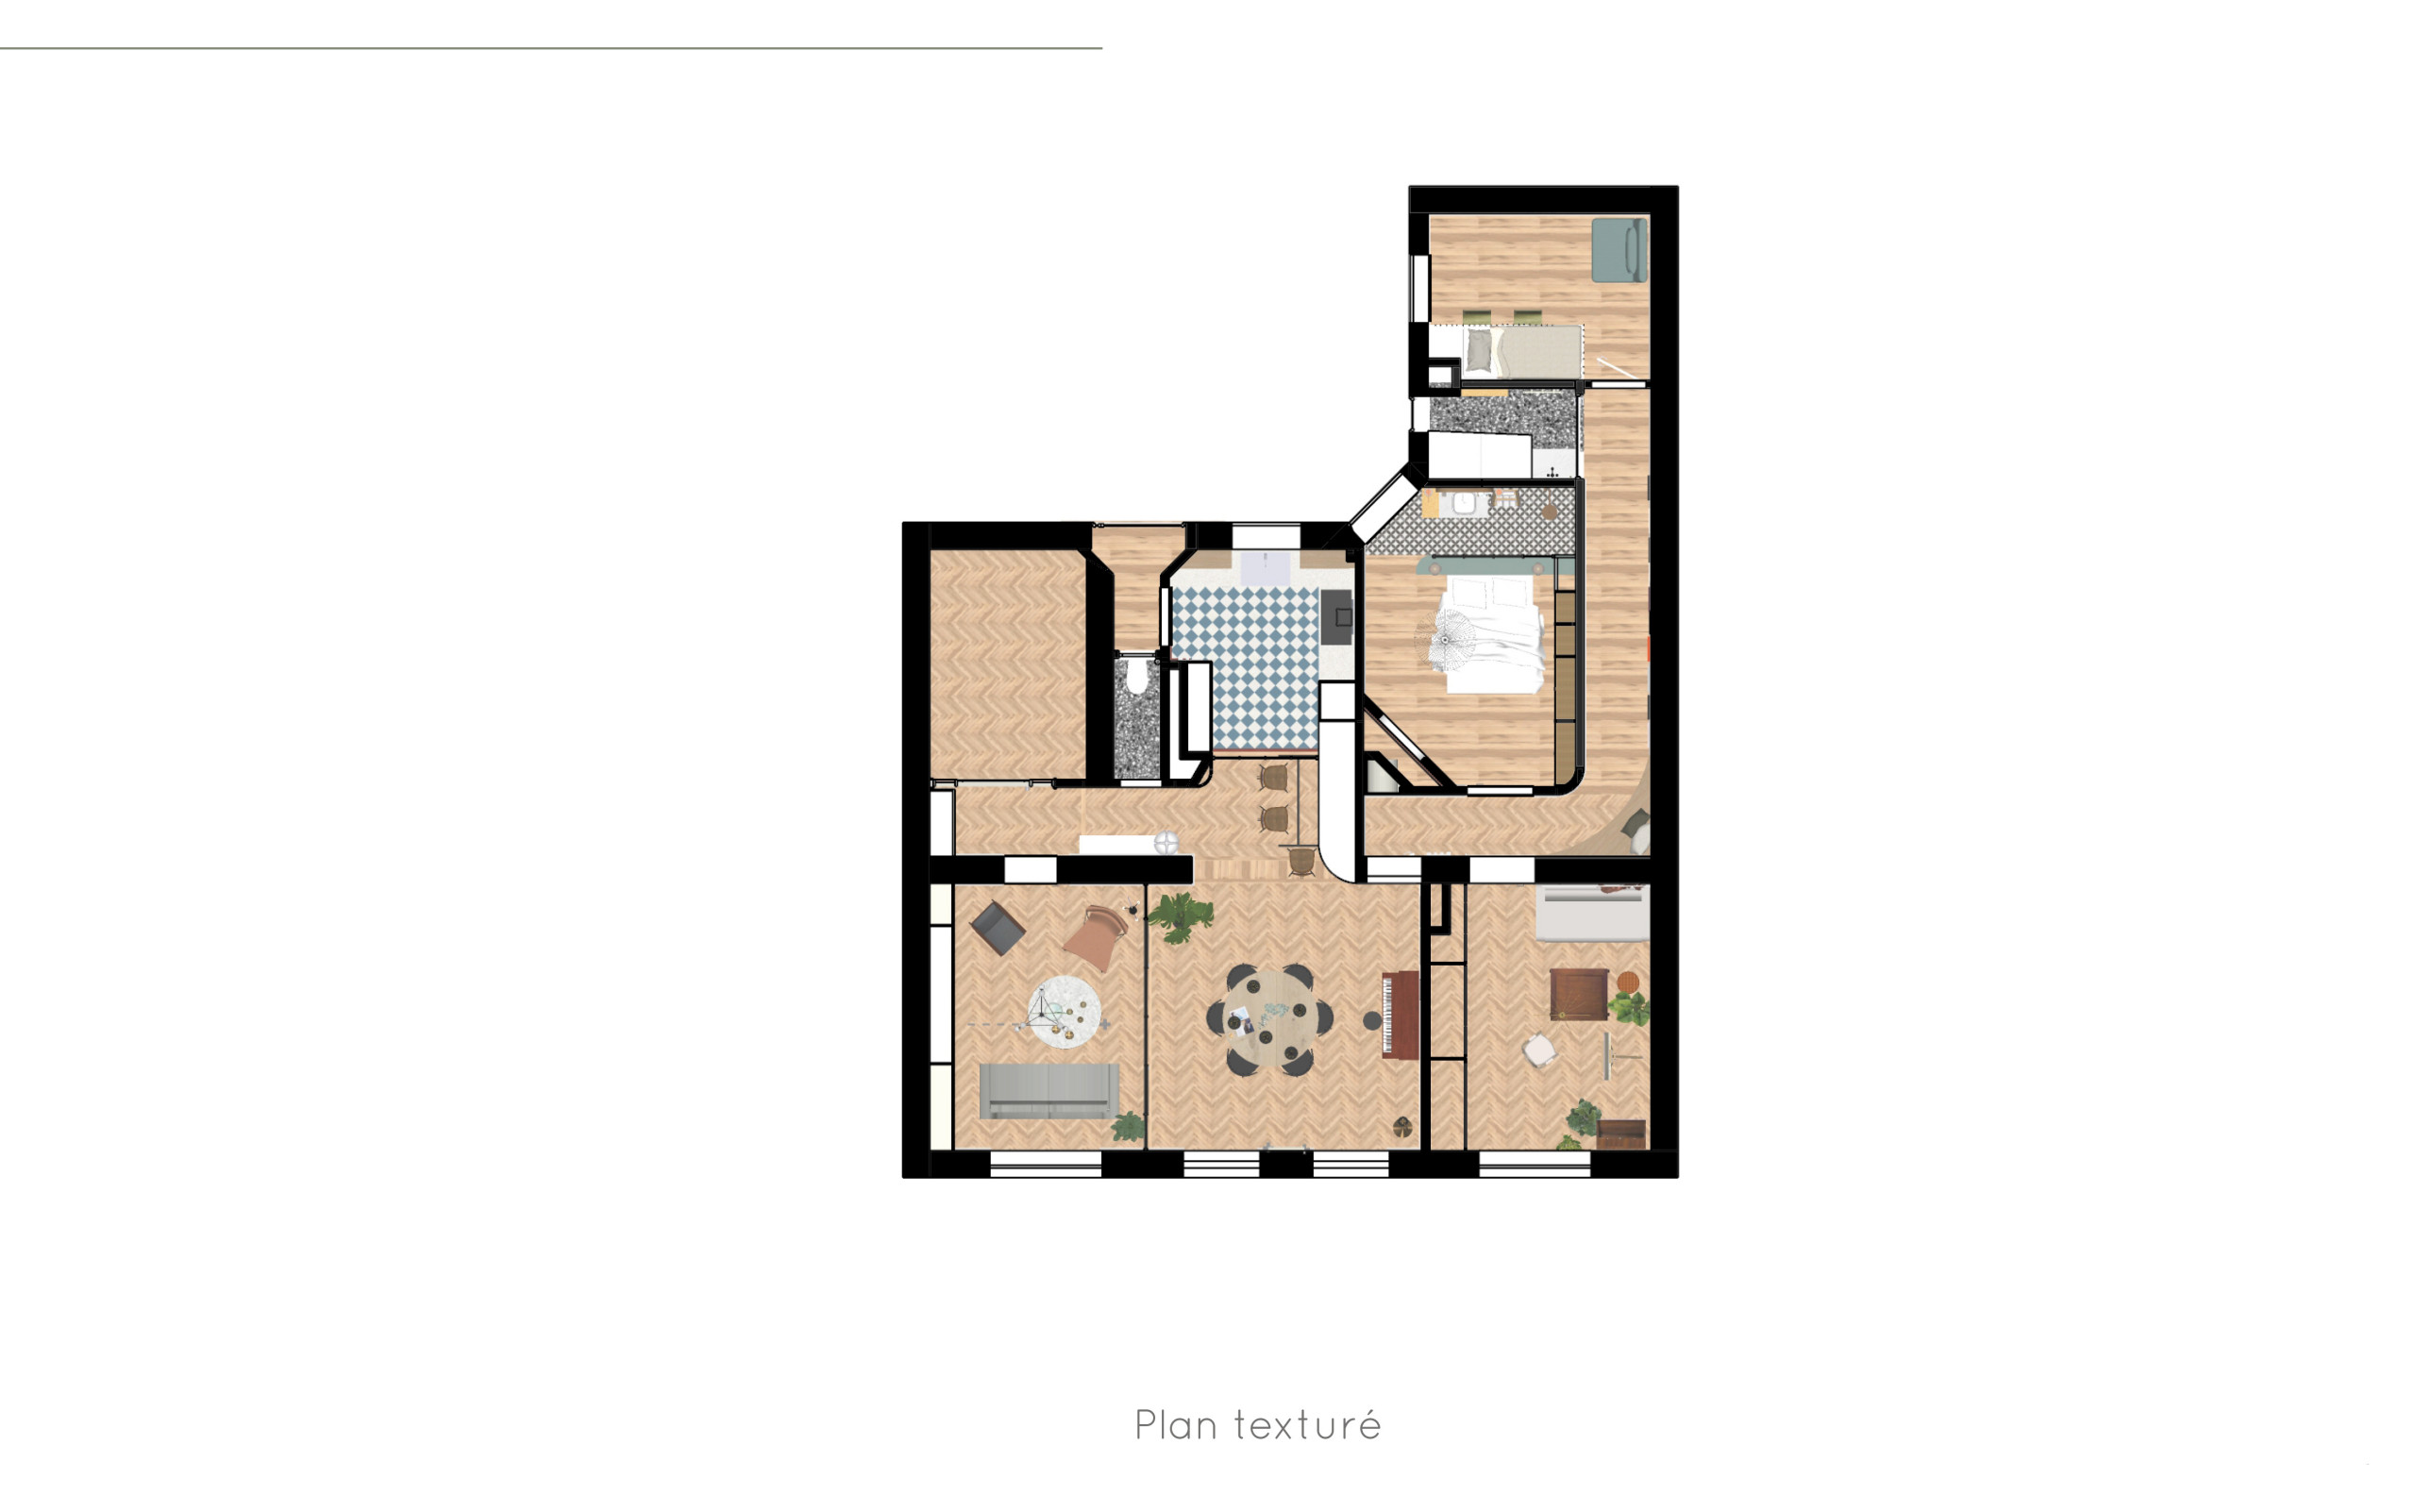 Option 1 - Appartement C - Plan texturé